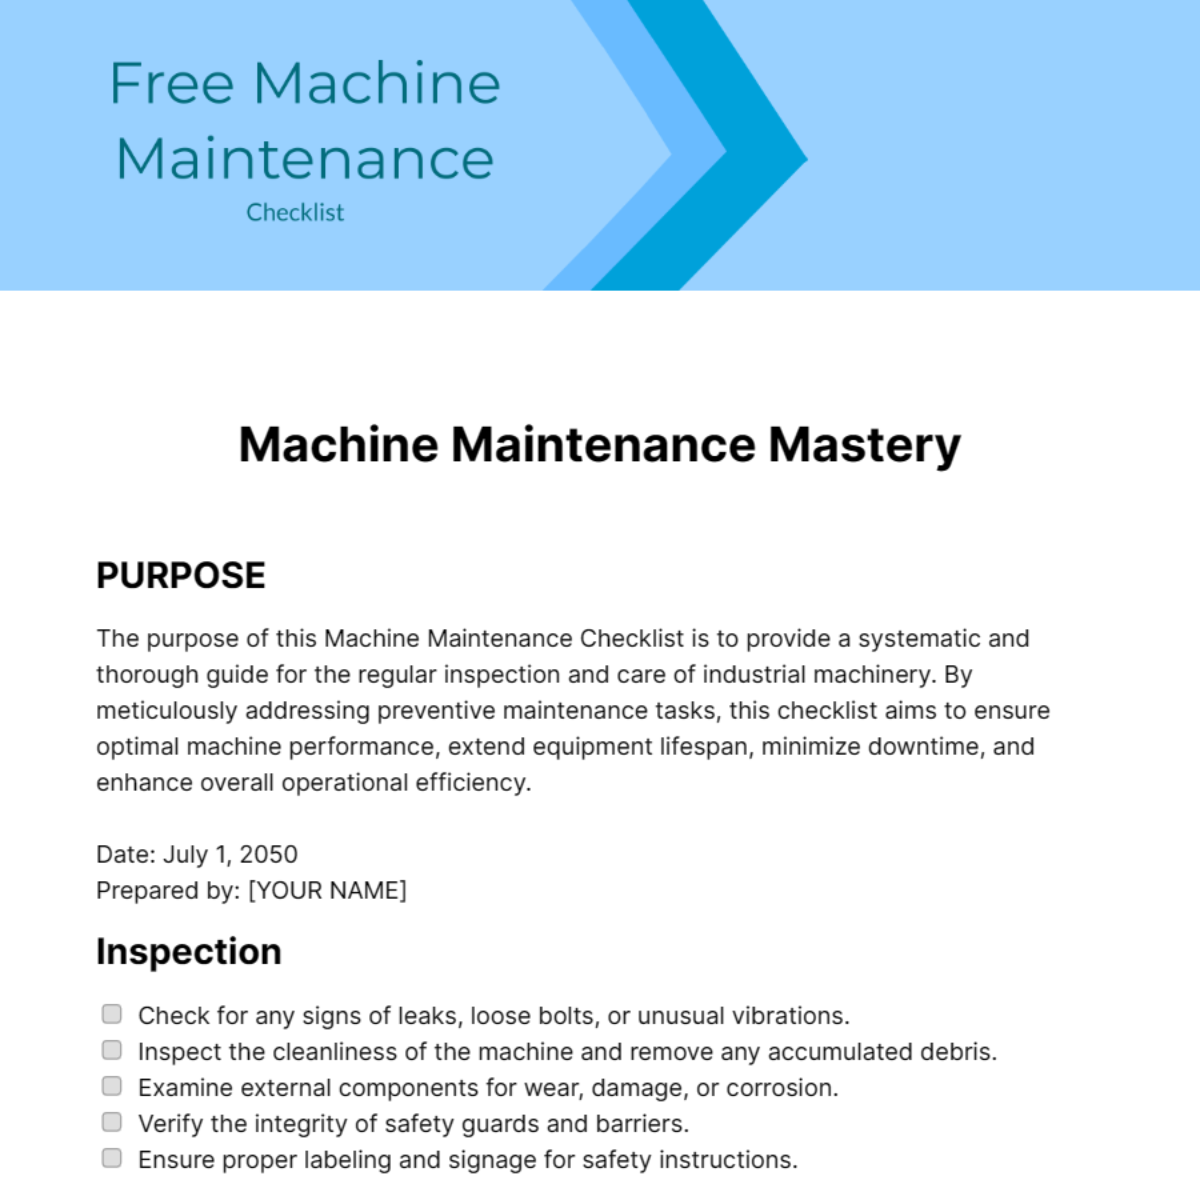 Free Machine Maintenance Checklist Template